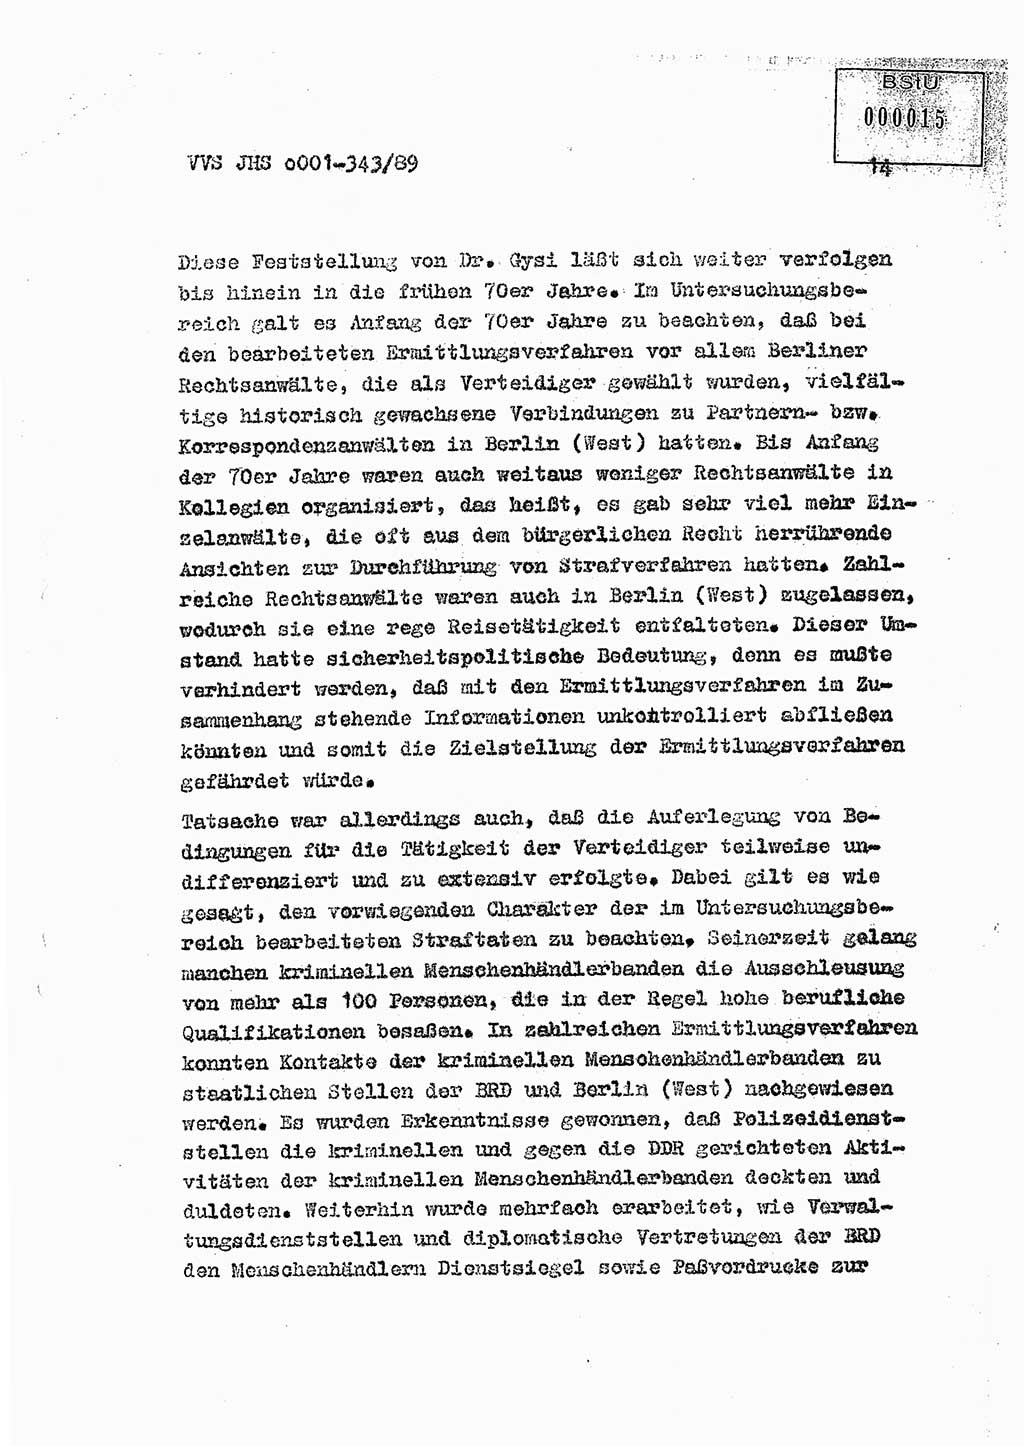 Diplomarbeit Offiziersschüler Axel Henschke (HA Ⅸ/9), Ministerium für Staatssicherheit (MfS) [Deutsche Demokratische Republik (DDR)], Juristische Hochschule (JHS), Vertrauliche Verschlußsache (VVS) o001-343/89, Potsdam 1989, Seite 14 (Dipl.-Arb. MfS DDR JHS VVS o001-343/89 1989, S. 14)